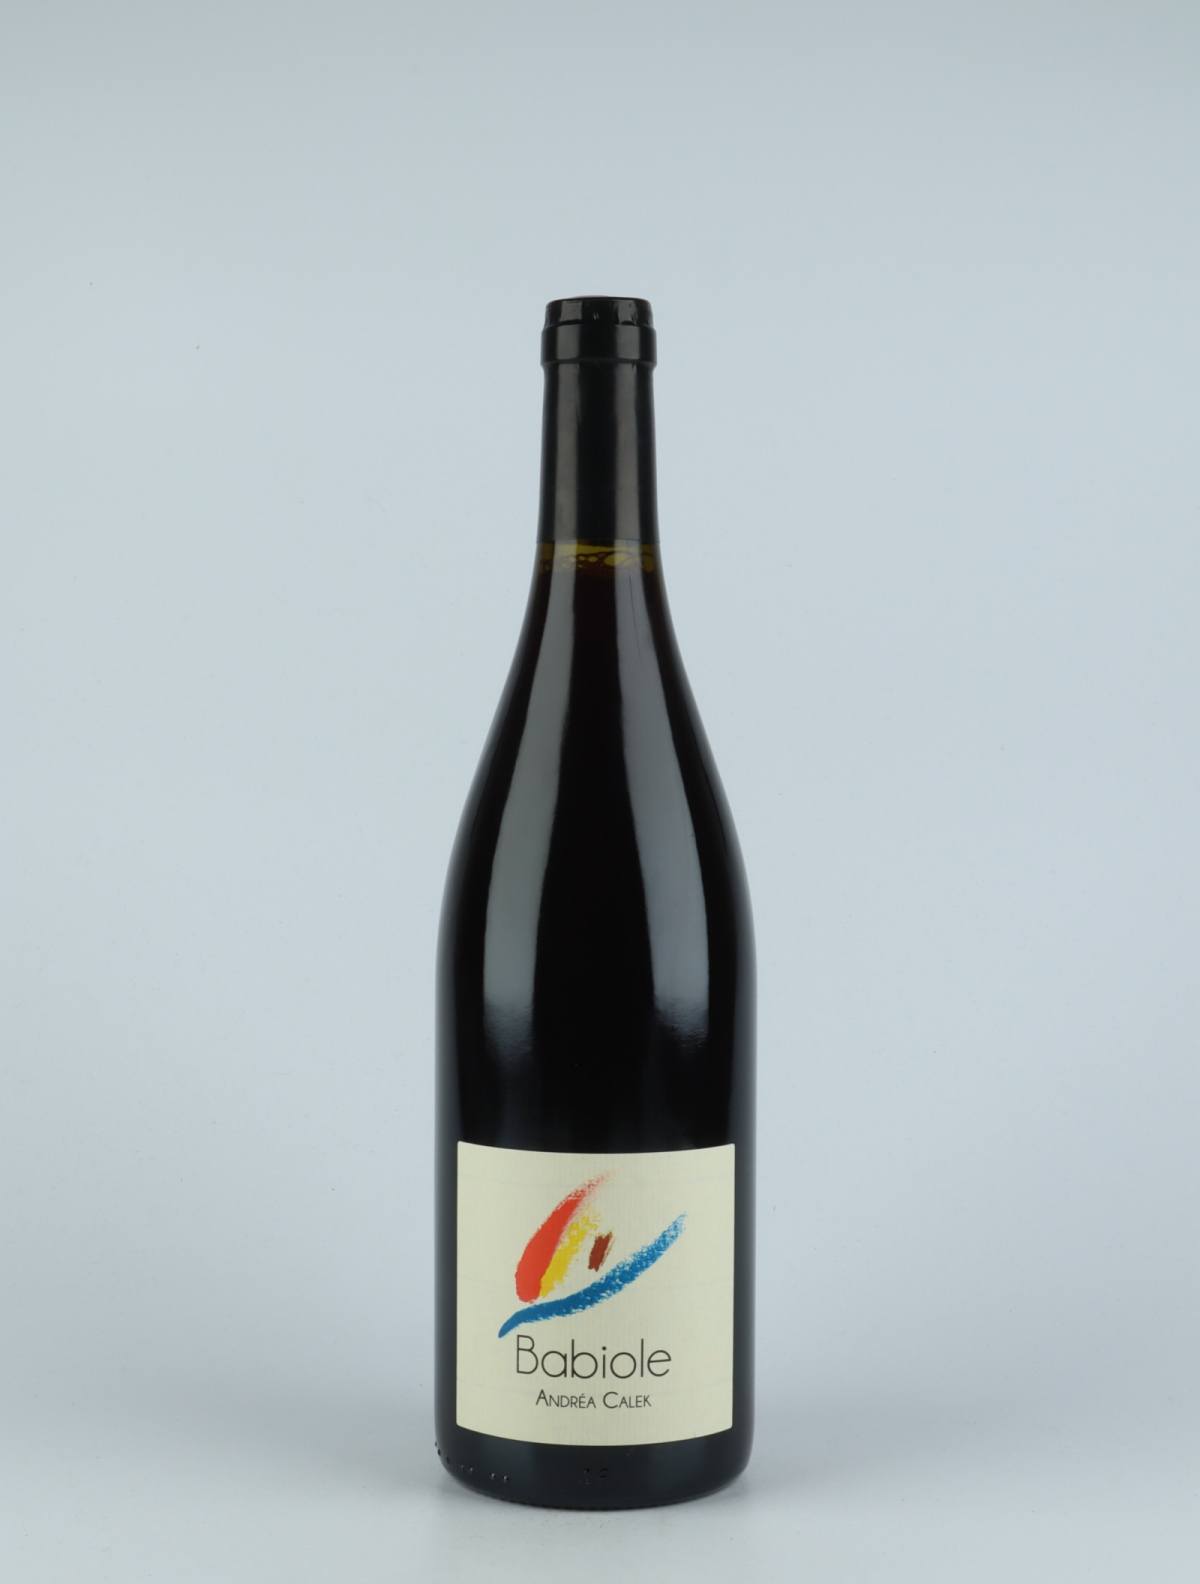 En flaske 2020 Babiole Rødvin fra Andrea Calek, Ardèche i Frankrig